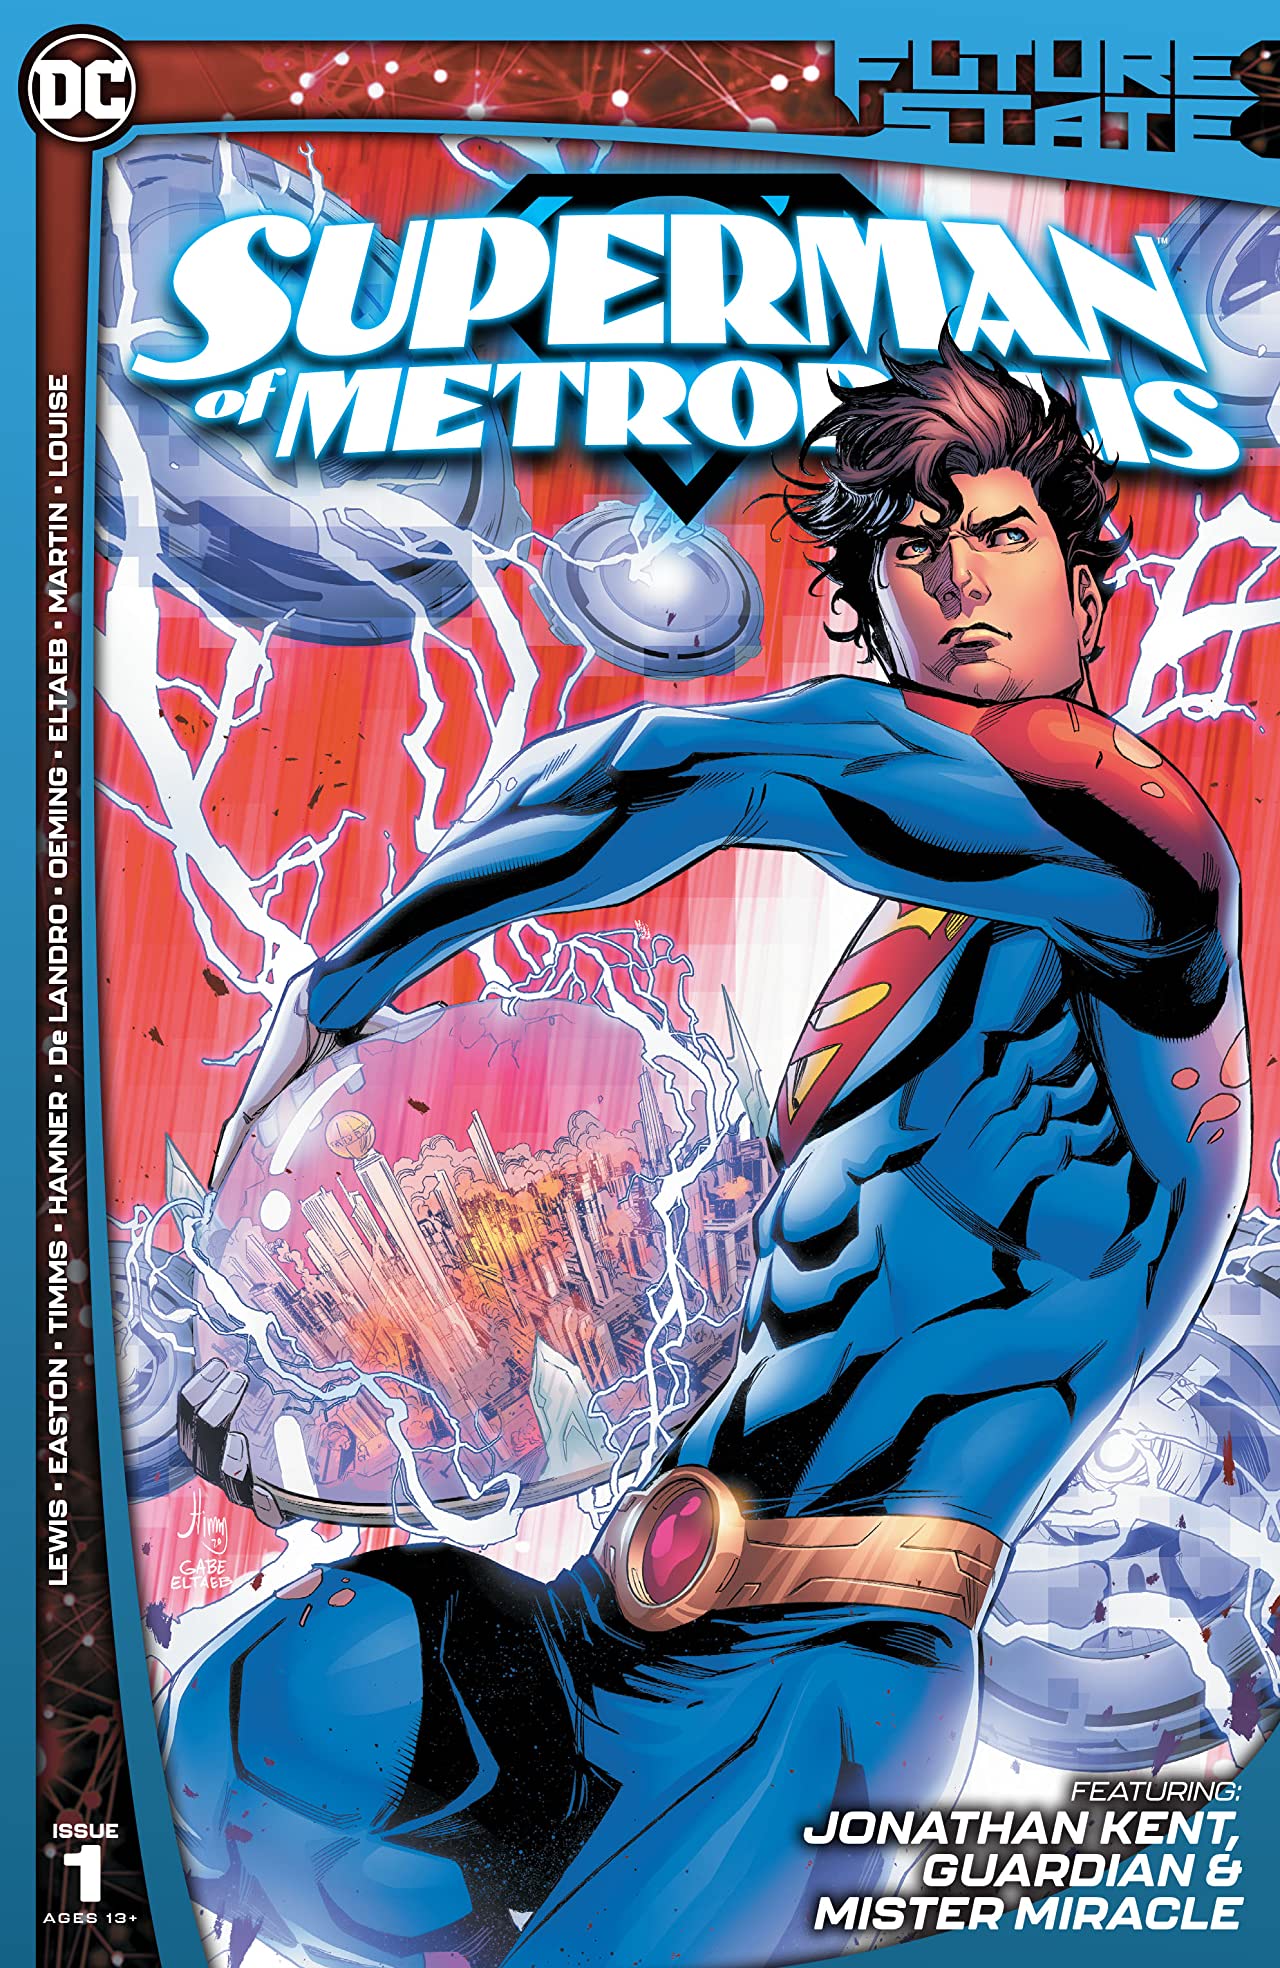 フューチャー ステート スーパーマン オブ メトロポリス Vol 1 Dcデータベース Wiki Fandom